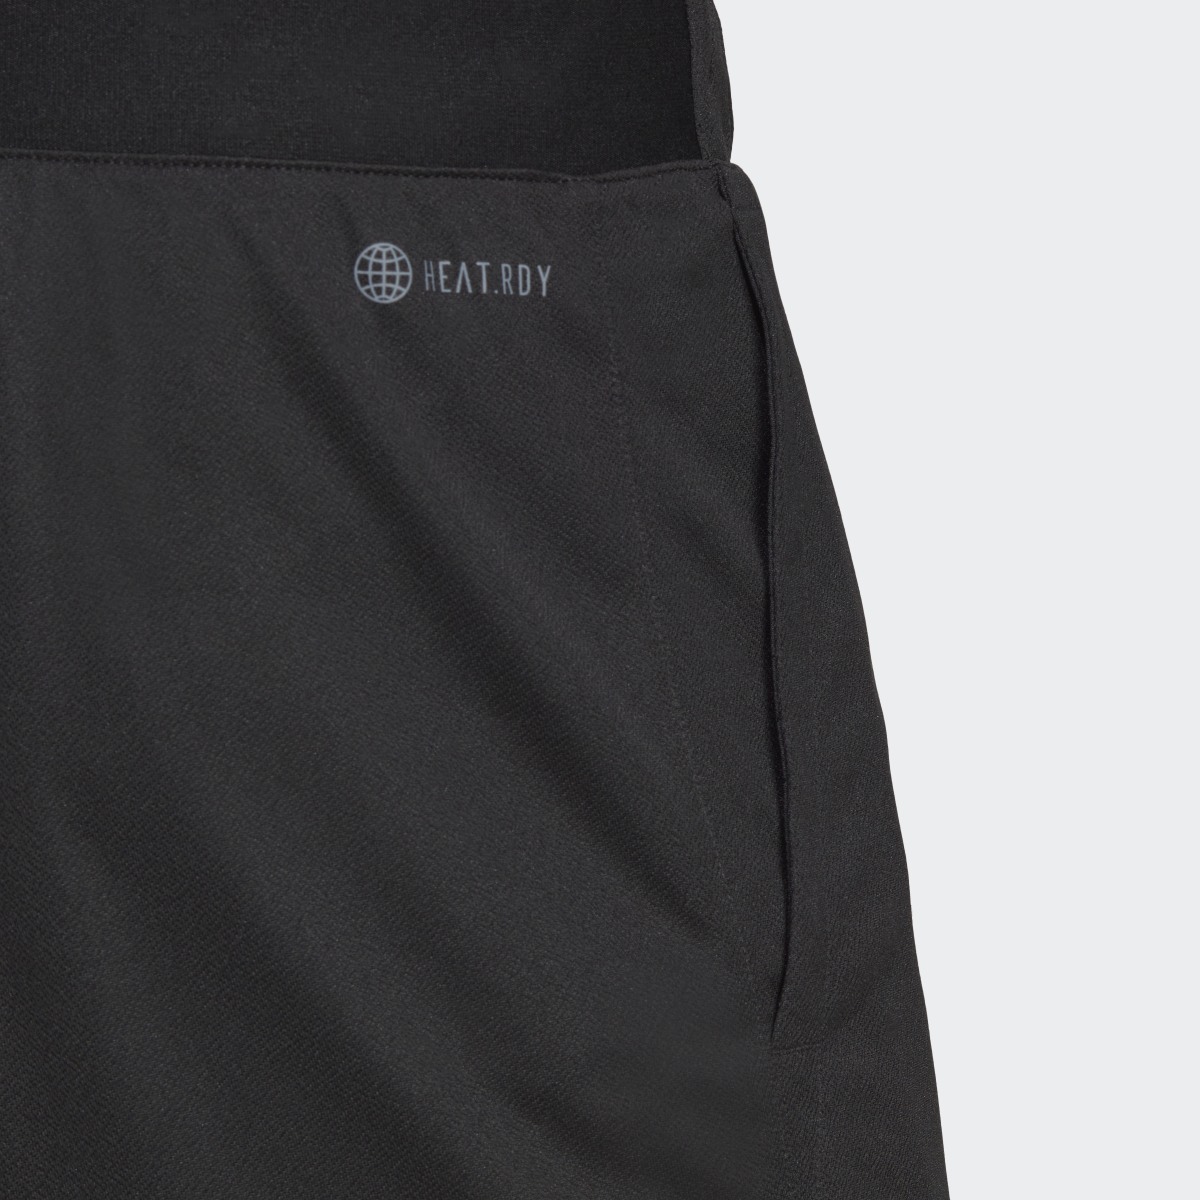 Adidas HEAT.RDY Knit Tennis Shorts. 6